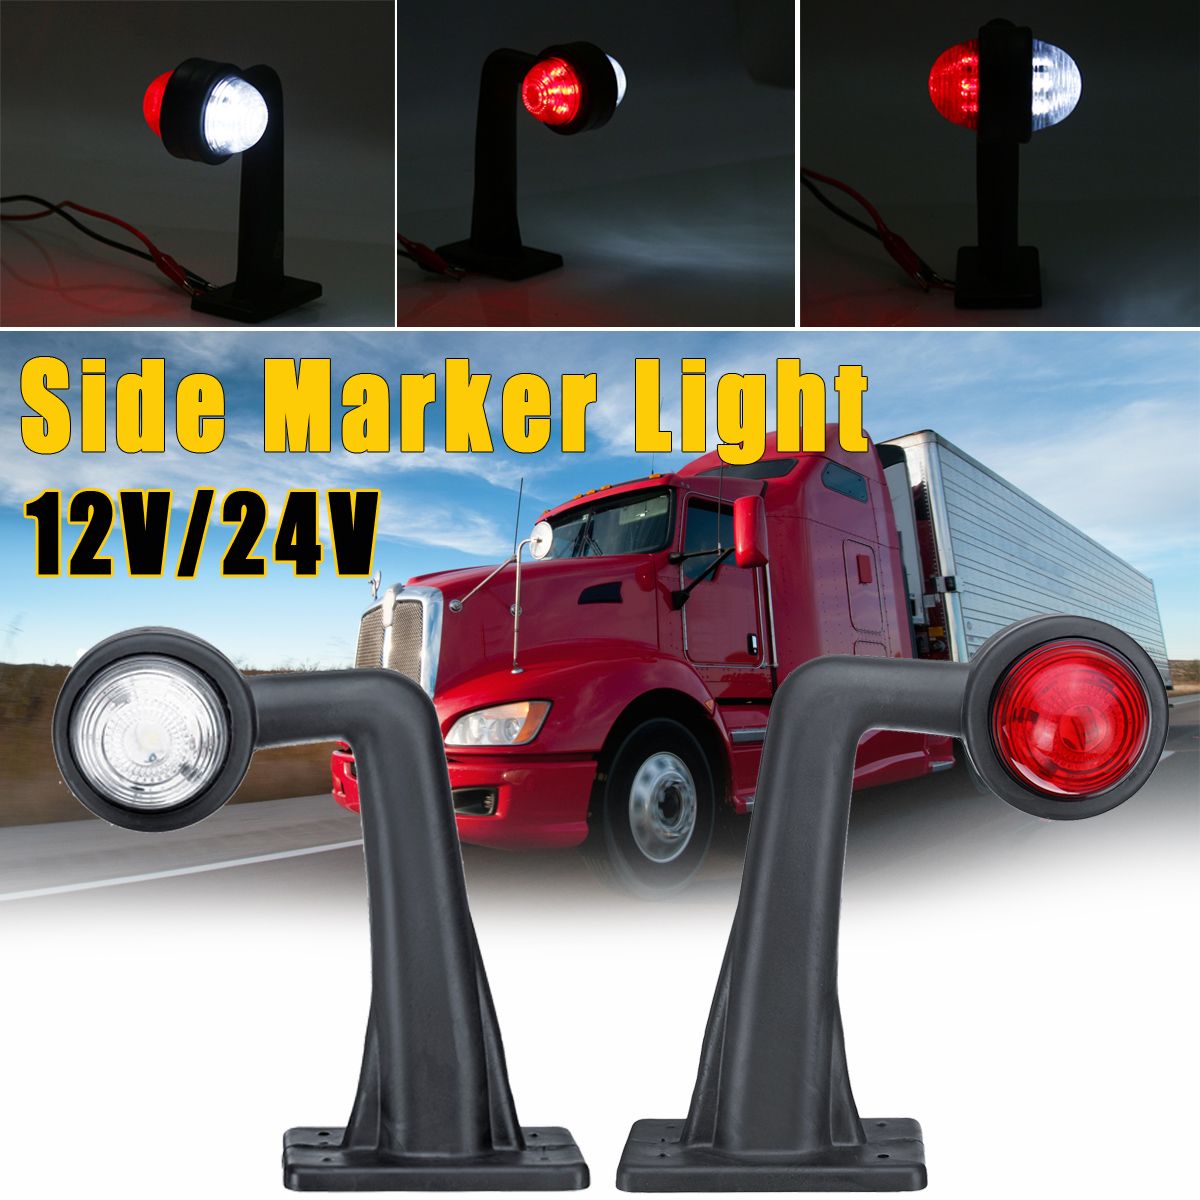 Pair-LED-Side-Marker-Lights-Indicator-Lamp-12V24V-Red-White-for-Car-Truck-Trailer-Lorry-Van-1553111